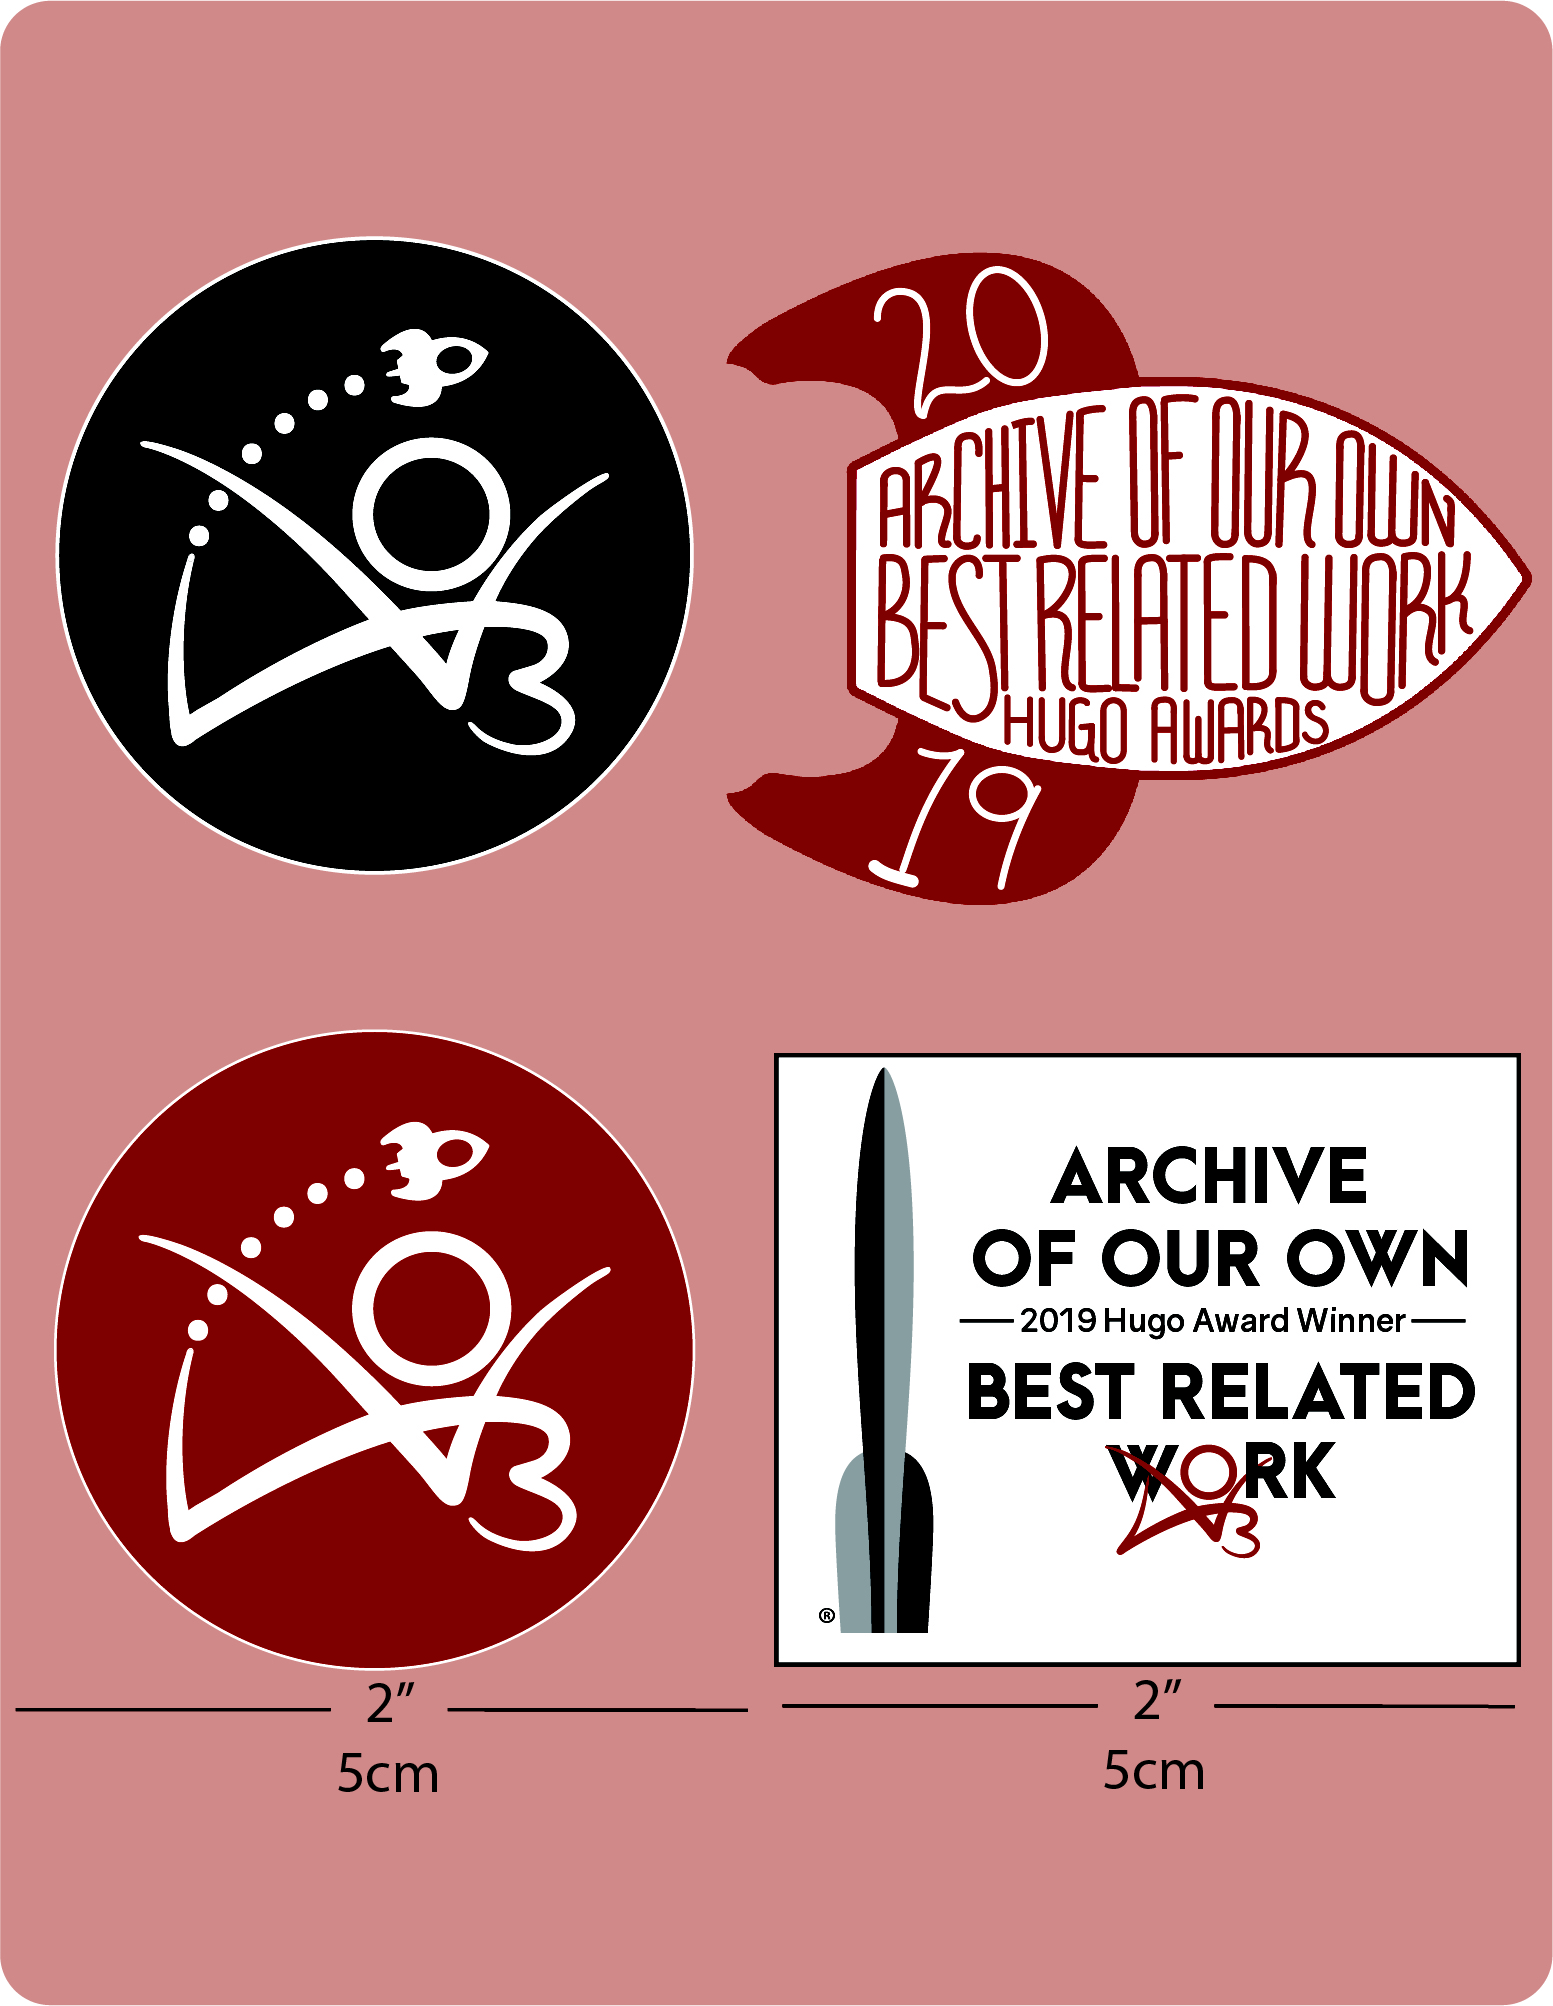 Hugo Award-klistermærkesæt (indeholder fire klistermærker, der måler 5 cm.). De første to er runde med en lille rumraket flyvende over AO3's logo. (1) er rødt, og (2) er sort. (3) En rektangel med Hugo-logoet ved siden af ordene "Archive of Our Own - 2019 Hugo Award Winner - Best Related Work" (Vores Eget Arkiv – 2019 Hugo Award-vinder – Bedste relaterede værk) og (4) en stiliseret rumraket med ordene "Archive of Our Own, Best Related Work, Hugo Awards" (Vores Eget Arkiv, Bedste relaterede værk, Hugo Awards) håndskrevet inde i kroppen og året "2019" på rakettens styrefinner.